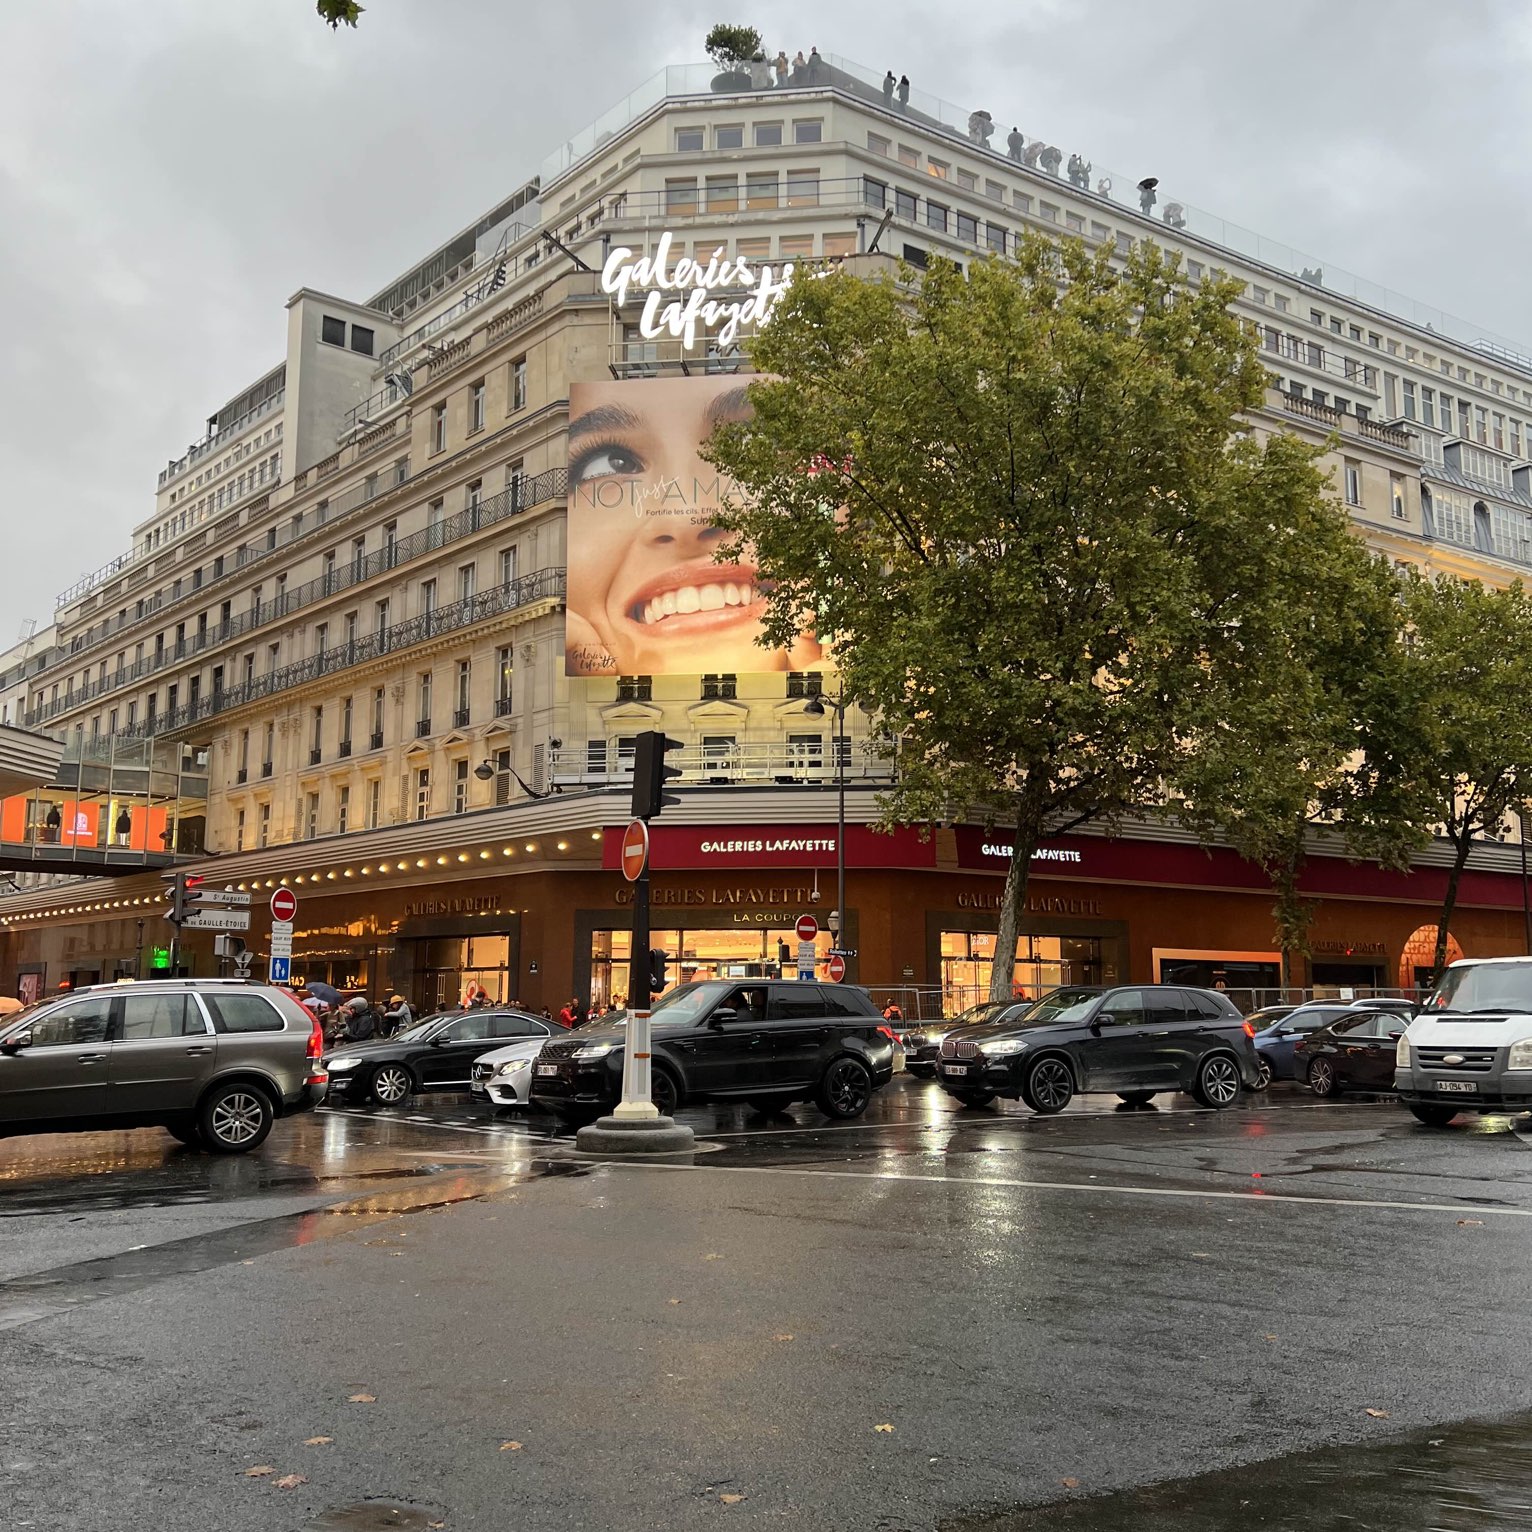 Galeries Lafayette - Paris